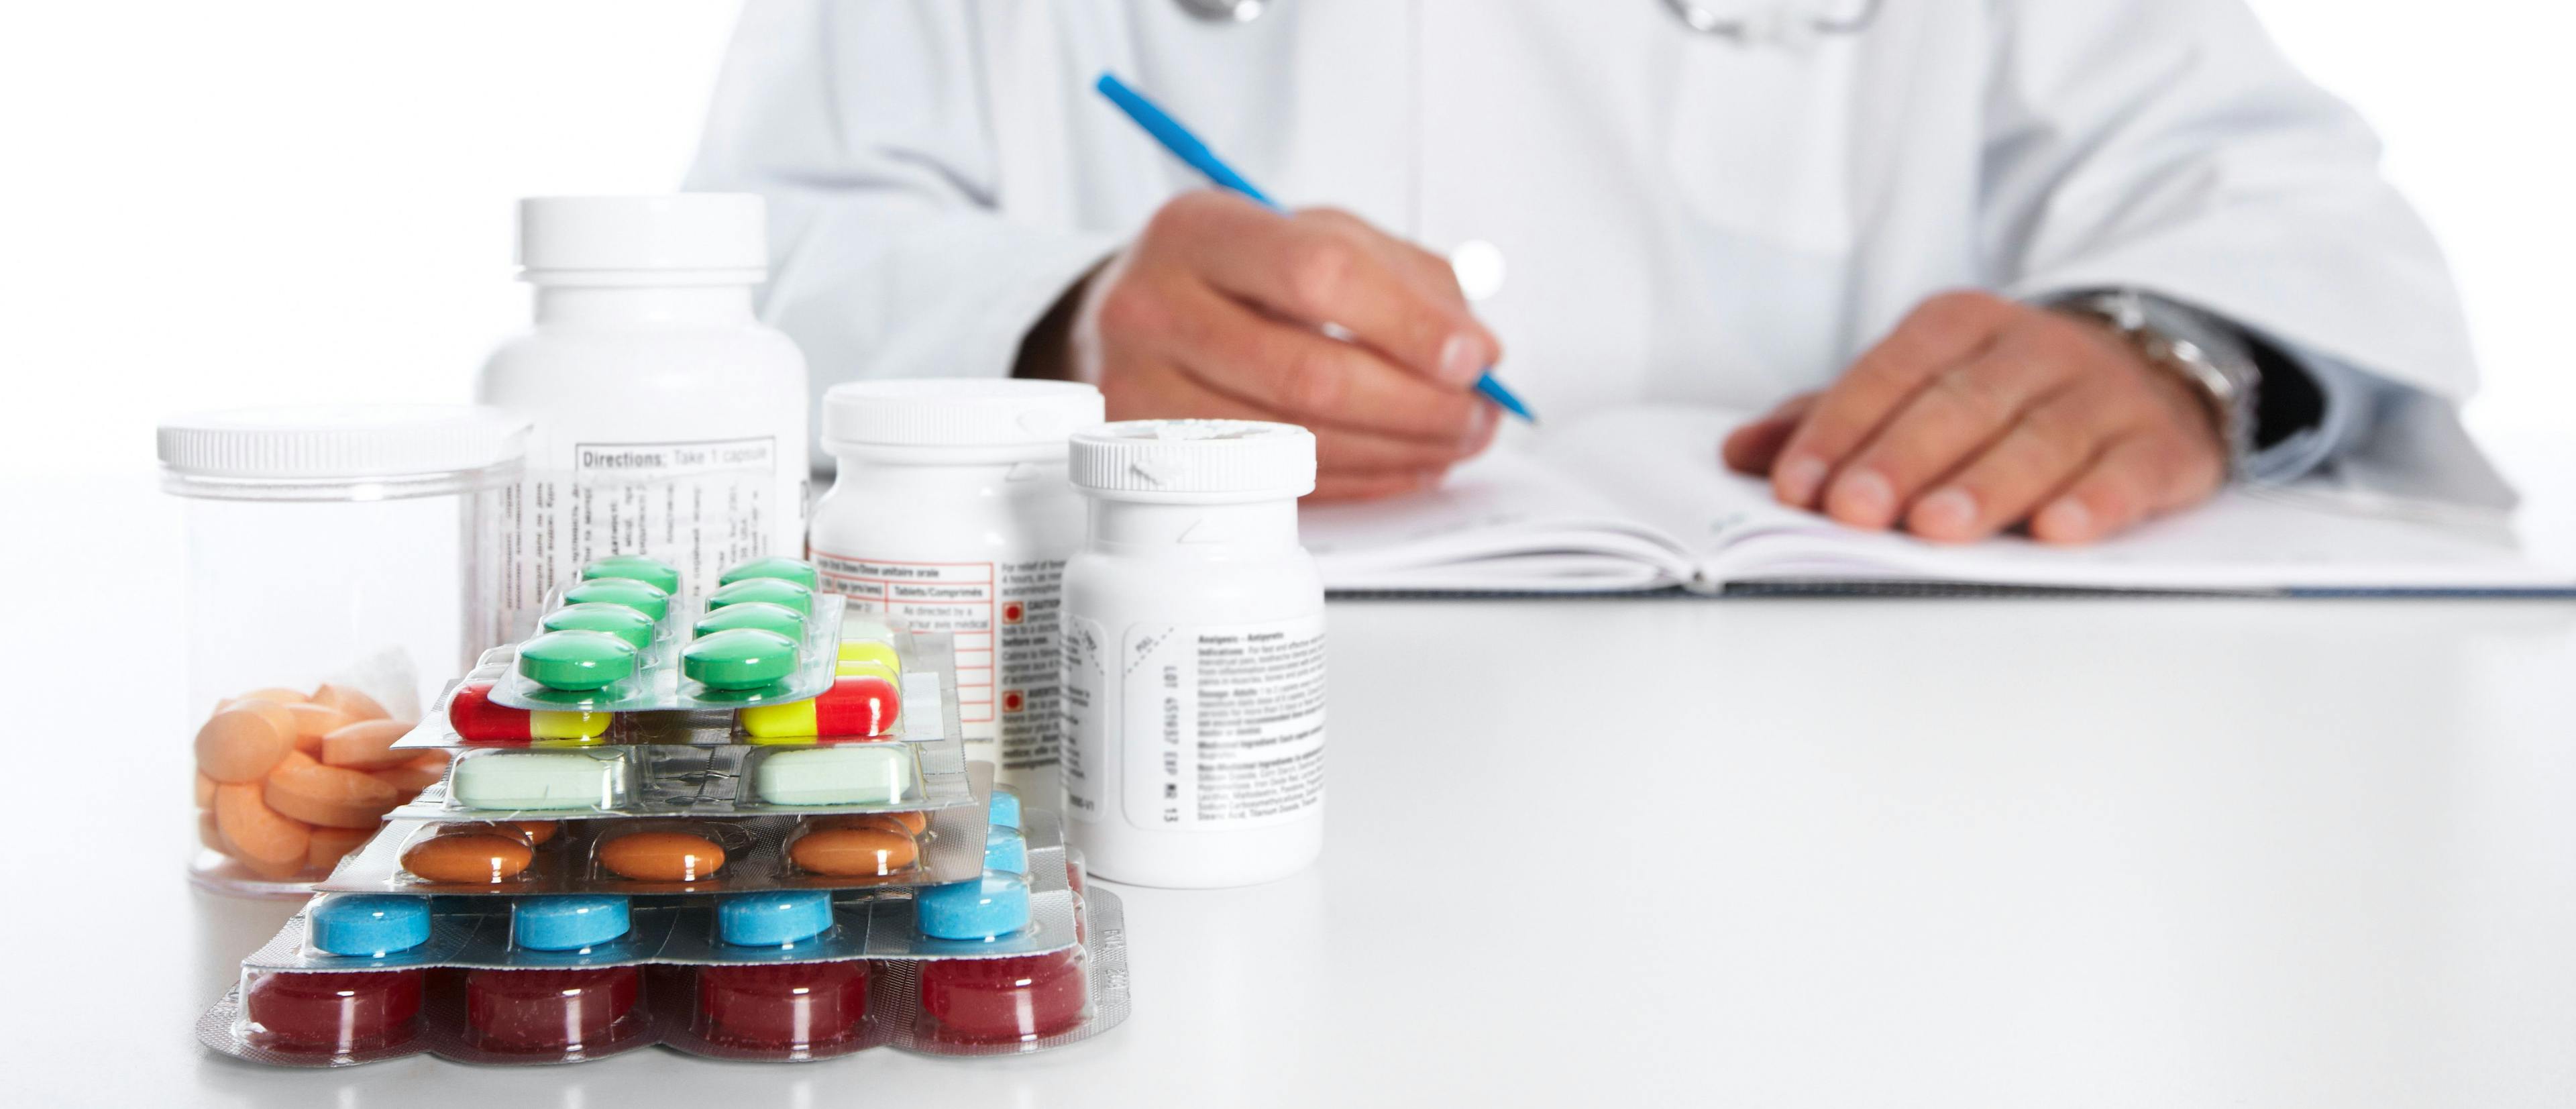 Diagnostic Errors Often Contribute to Antibiotic Misuse